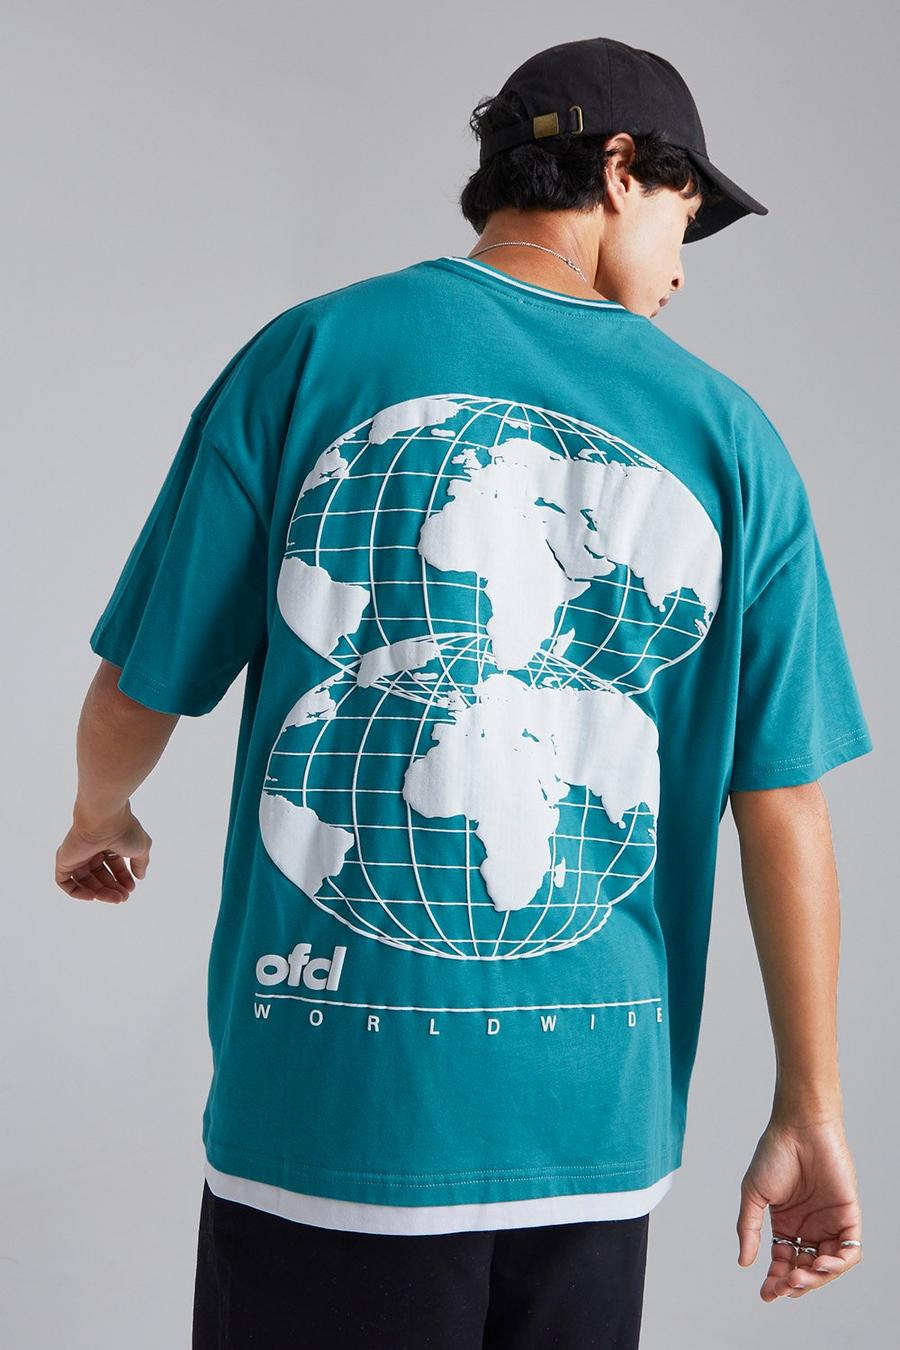 T-shirt oversize - Ofcl, Teal vert image number 1